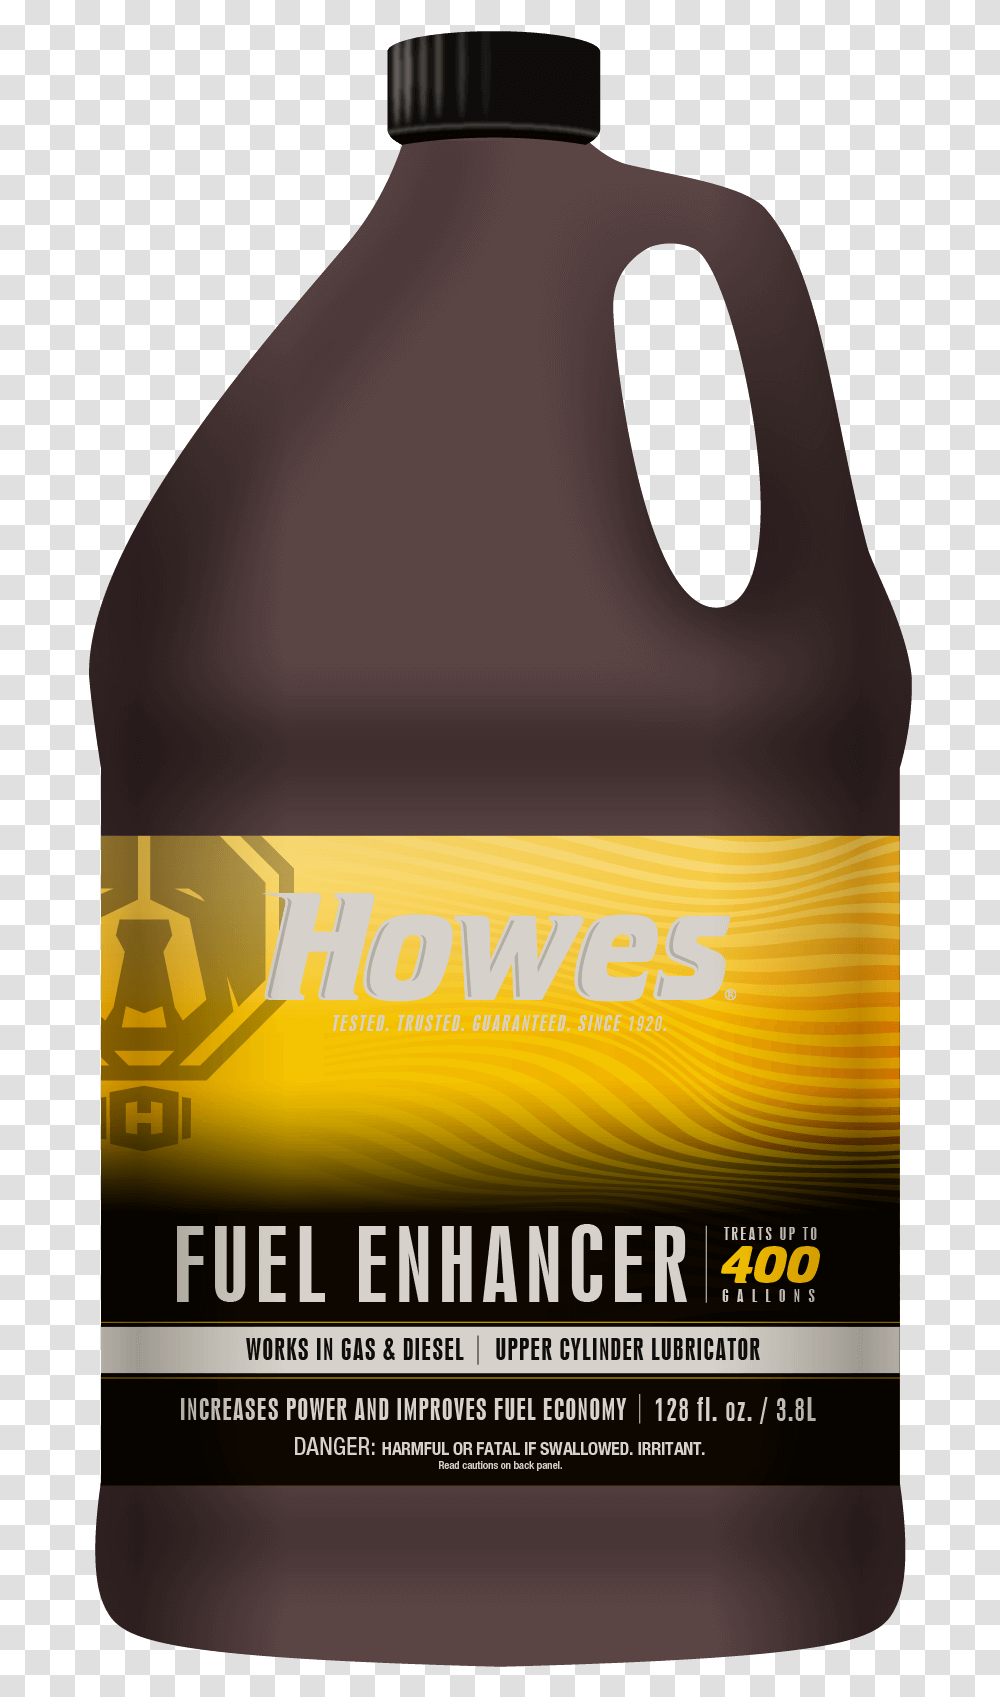 Fuel Enhancer Bottle, Beverage, Drink, Pop Bottle Transparent Png